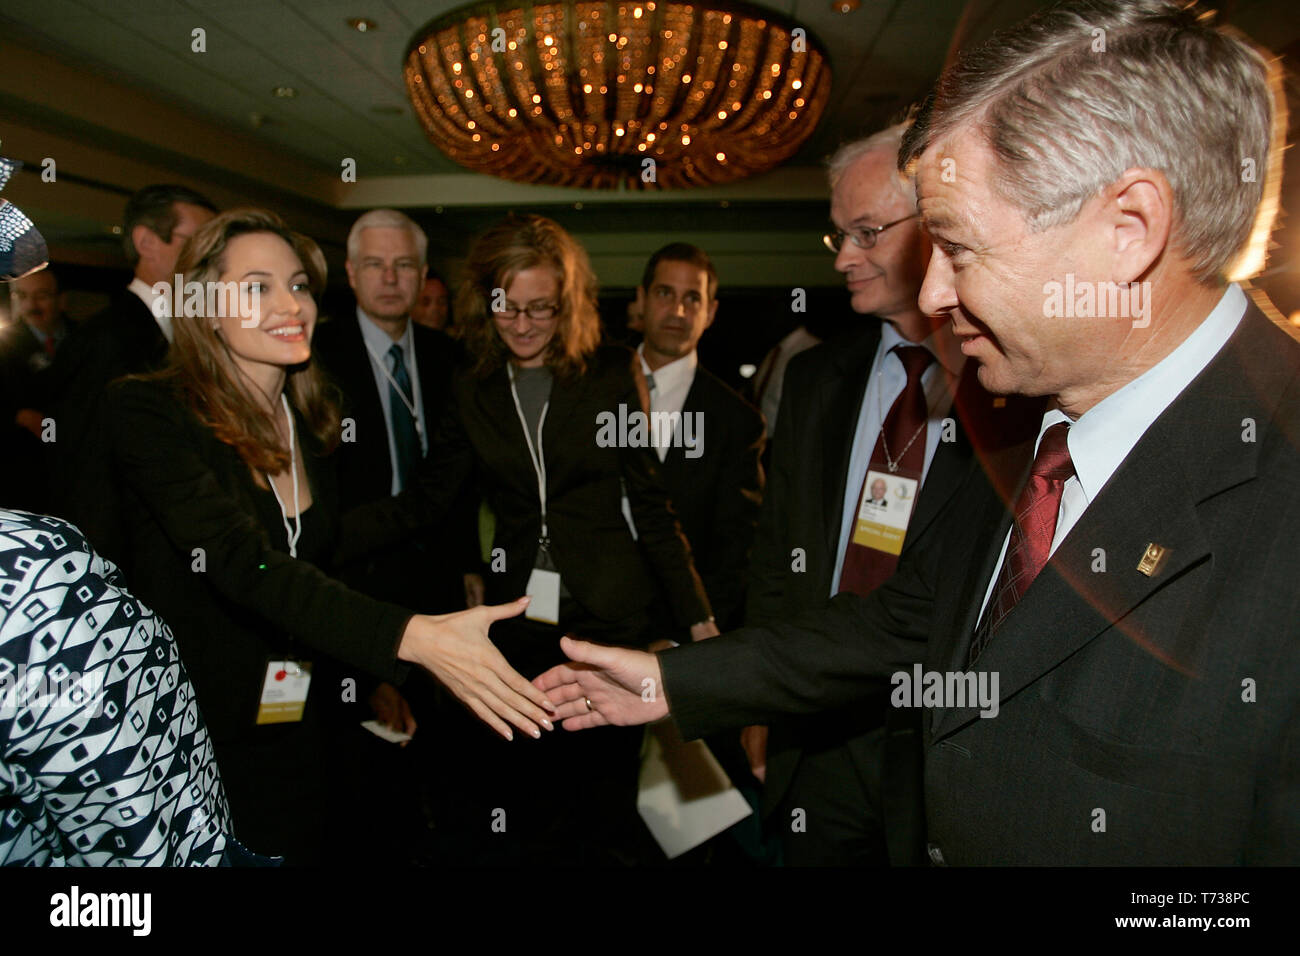 Le premier ministre de la Norvège, Kjell Magne Bondevik répond à l'actrice et militante Angelina Jolie au cours d'un débat lors de la réunion d'inauguration de la Clinton Global Initiative forum. Banque D'Images